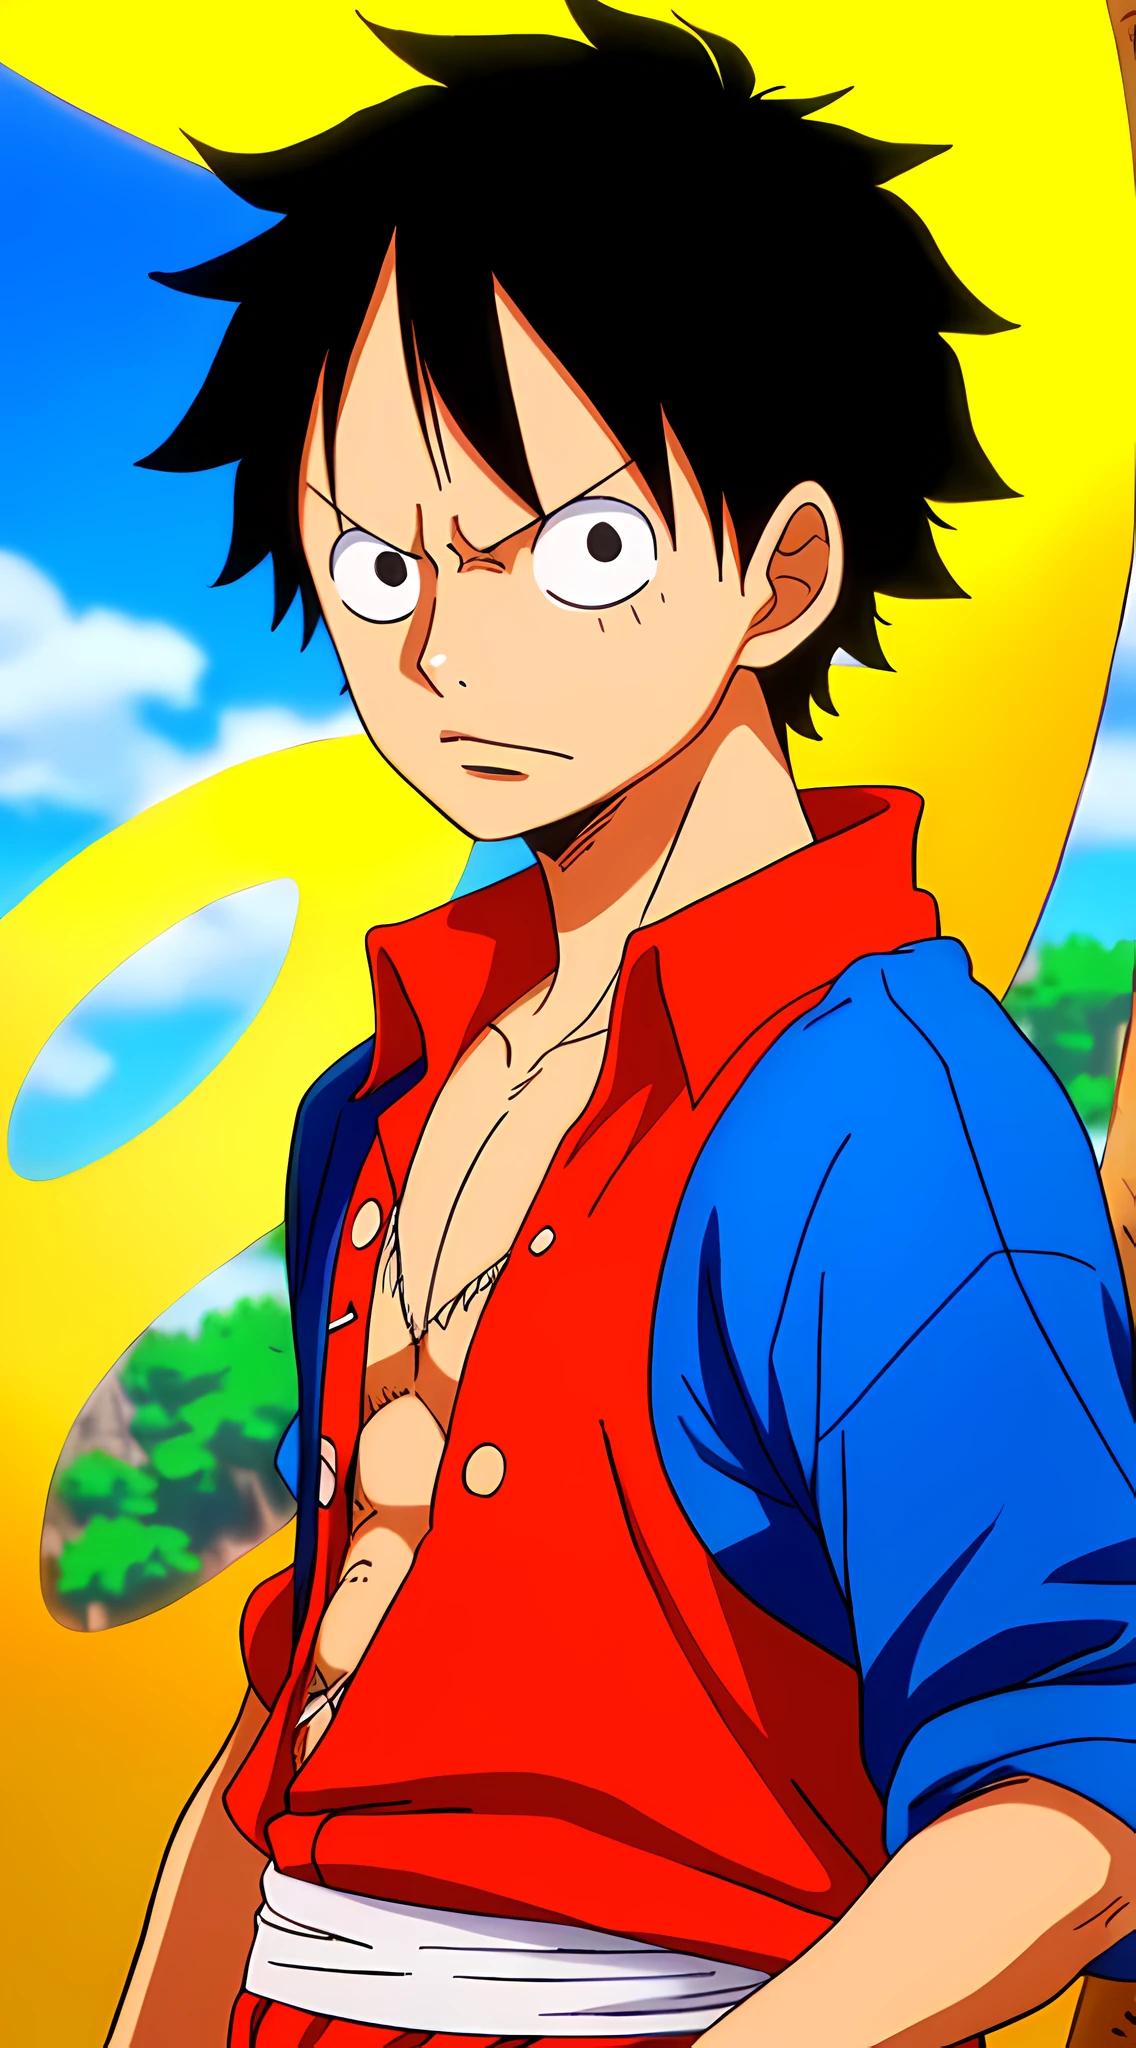 [Wanostyle:1.3] Affe D. Ruffy, der Protagonist von One Piece, ist dargestellt in einem [Porträtbild] mit [beste Qualität]. Sein [Wanostyle] Das Design spiegelt den künstlerischen und kulturellen Stil des Wano-Landes wider.